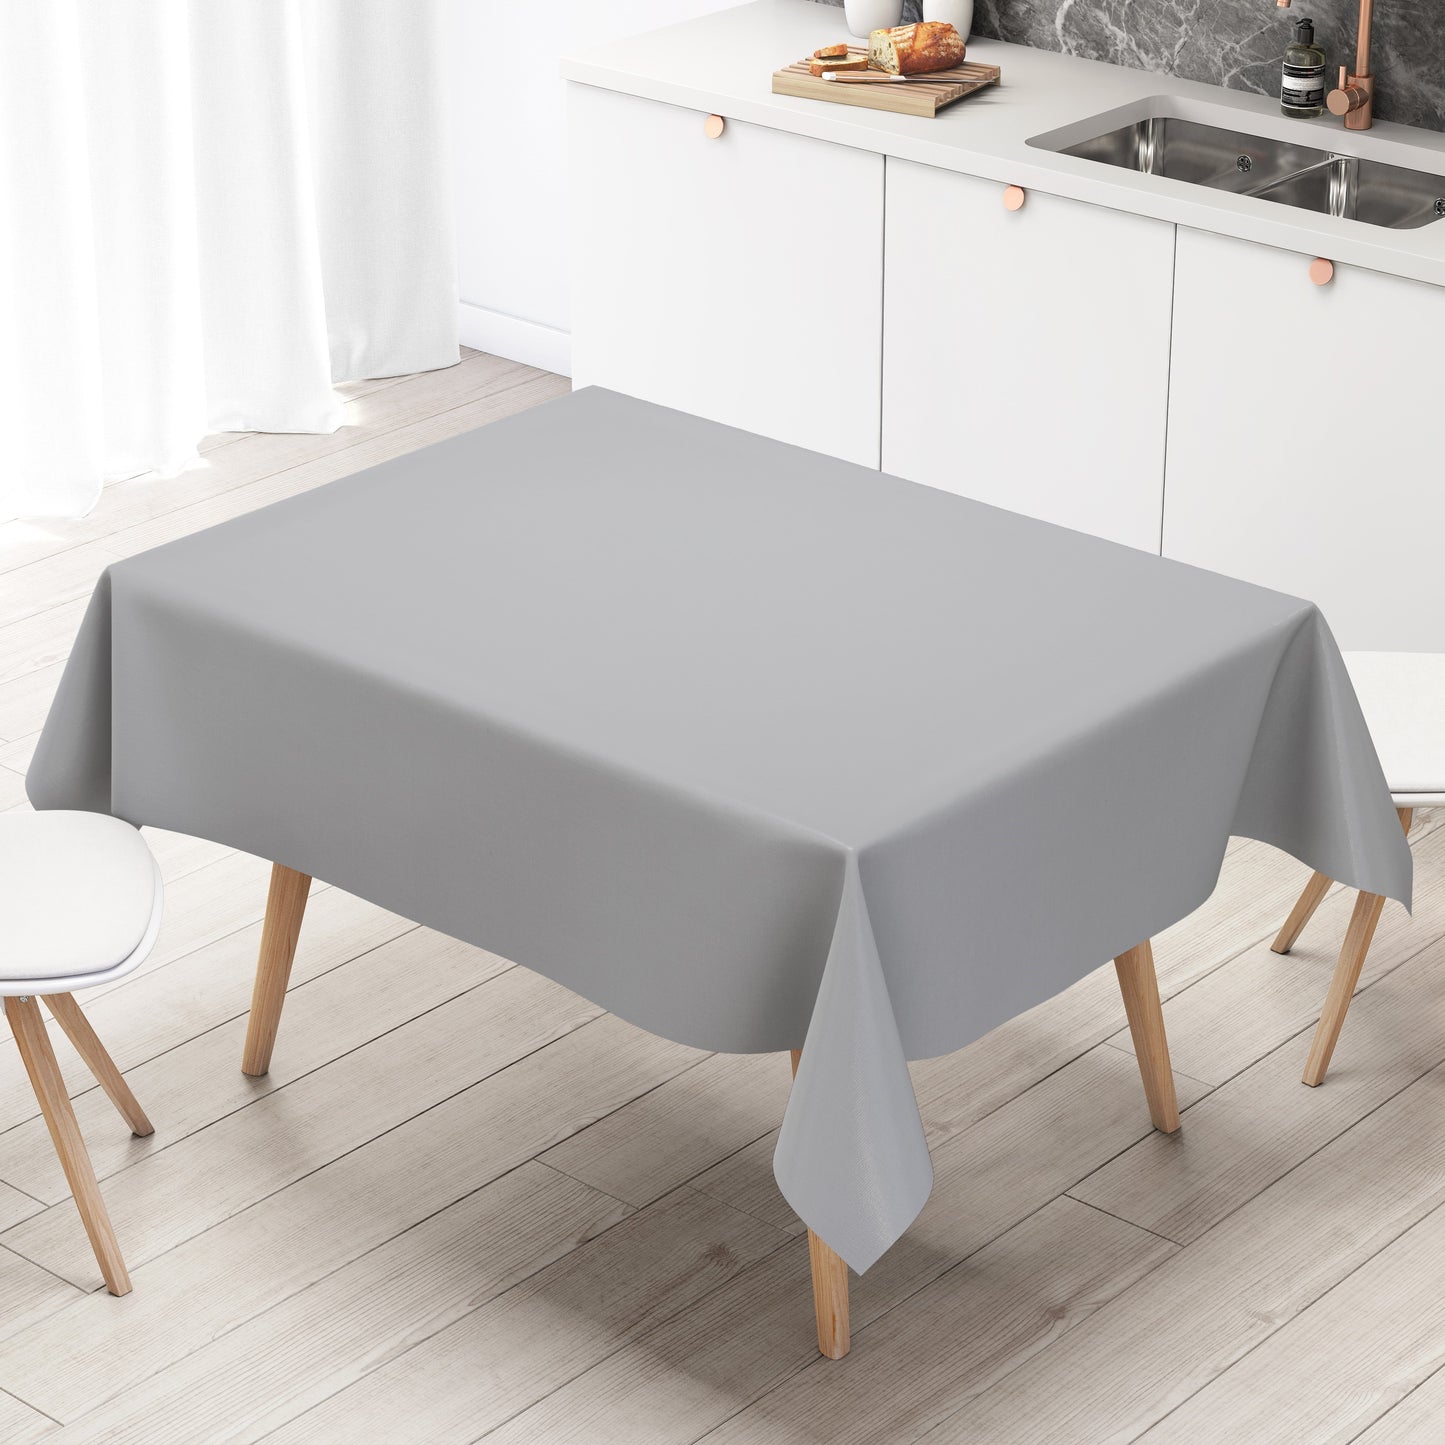 Wachstuch Tischdecke uni 422 einfarbig unifarben grau eckig rund oval